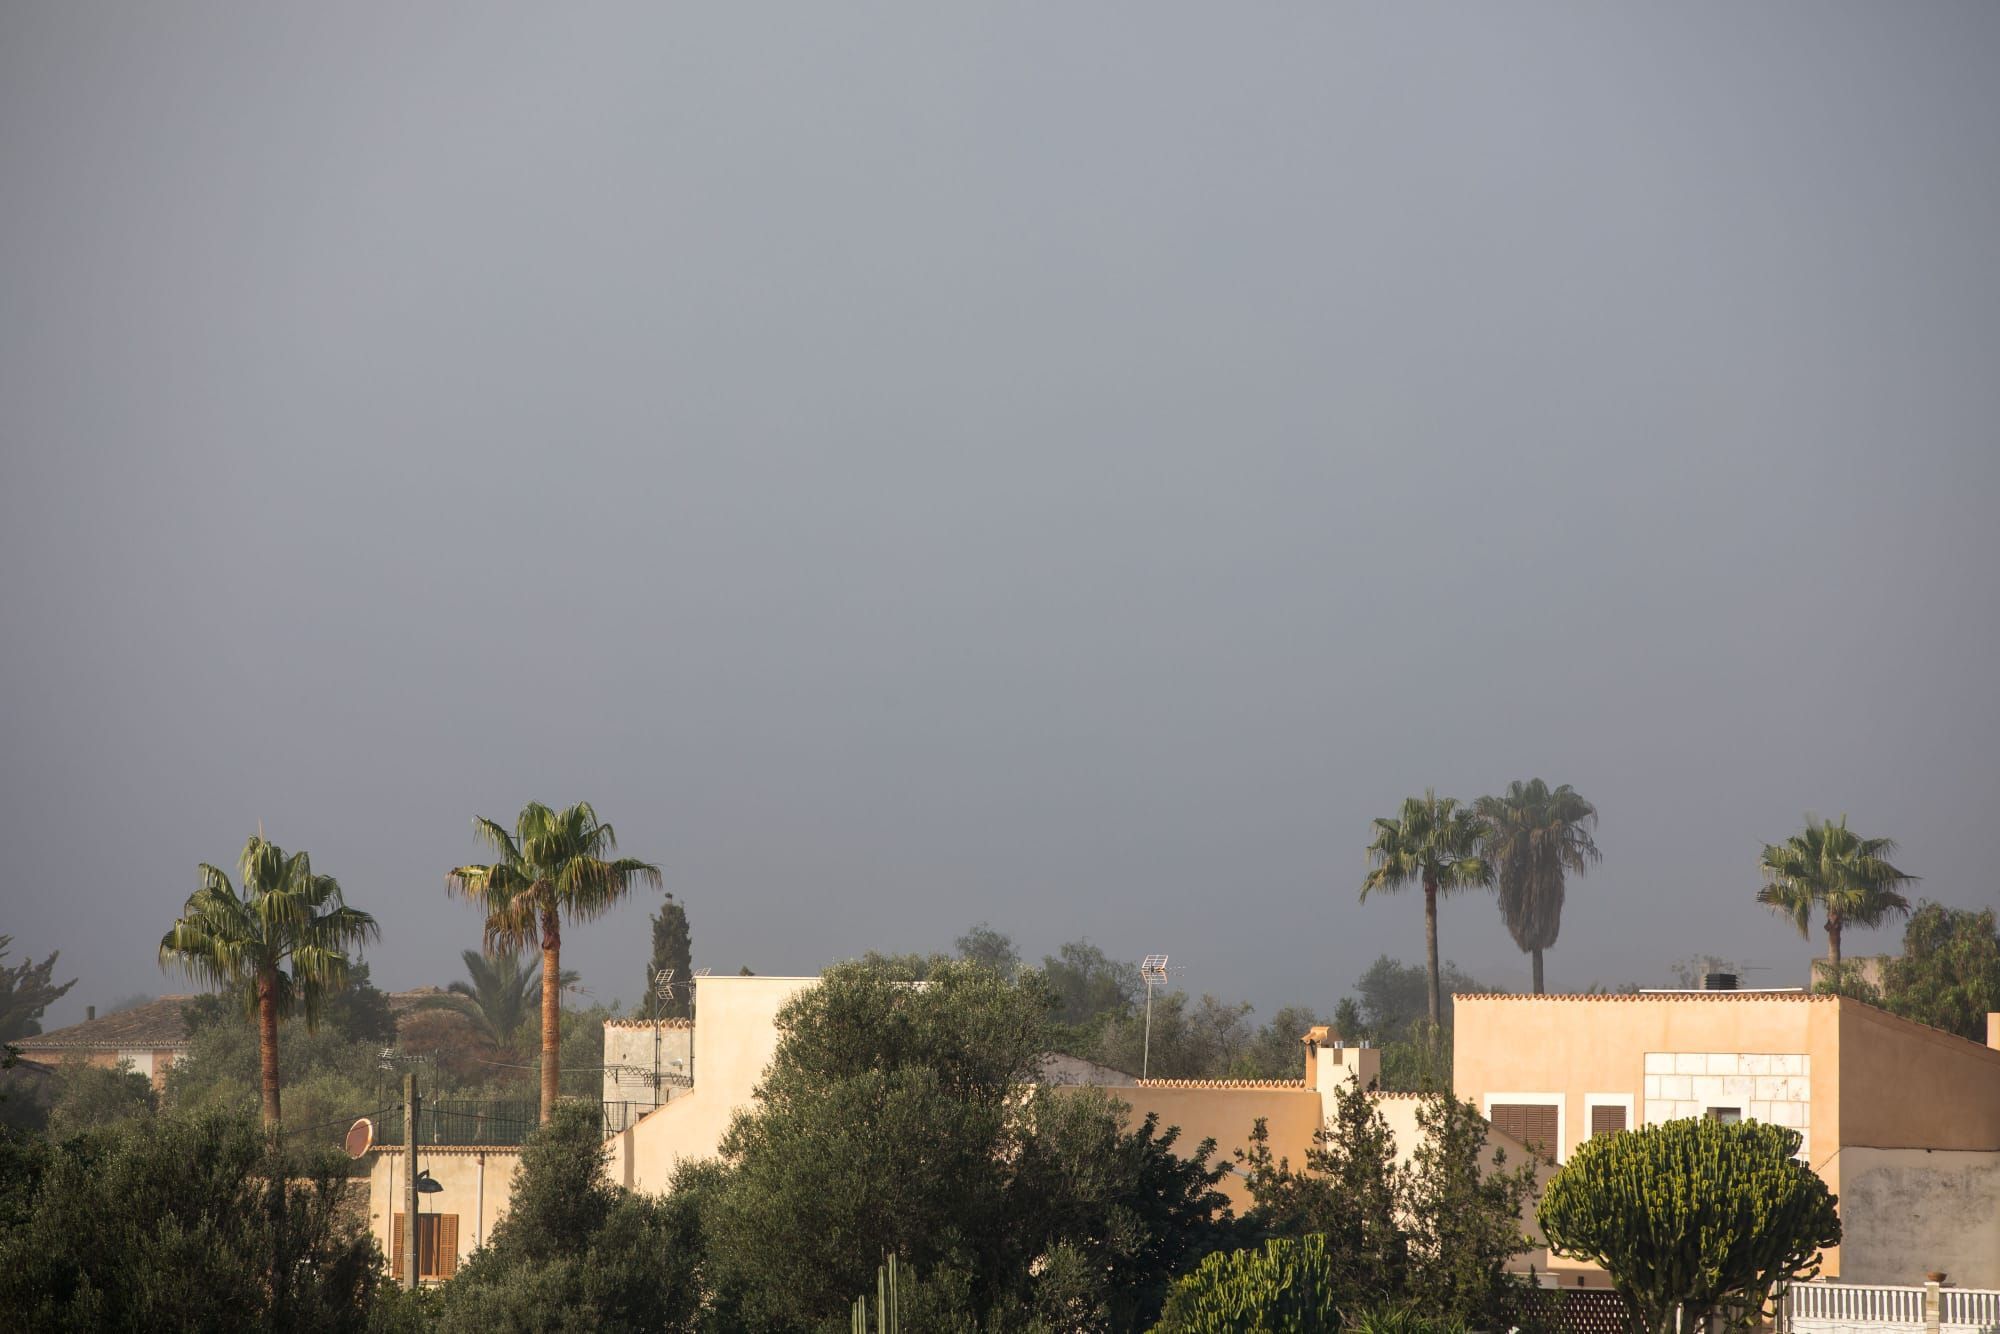 Nebel auf Mallorca: So sah es in Palma und Pòrtol am Mittwochmorgen aus